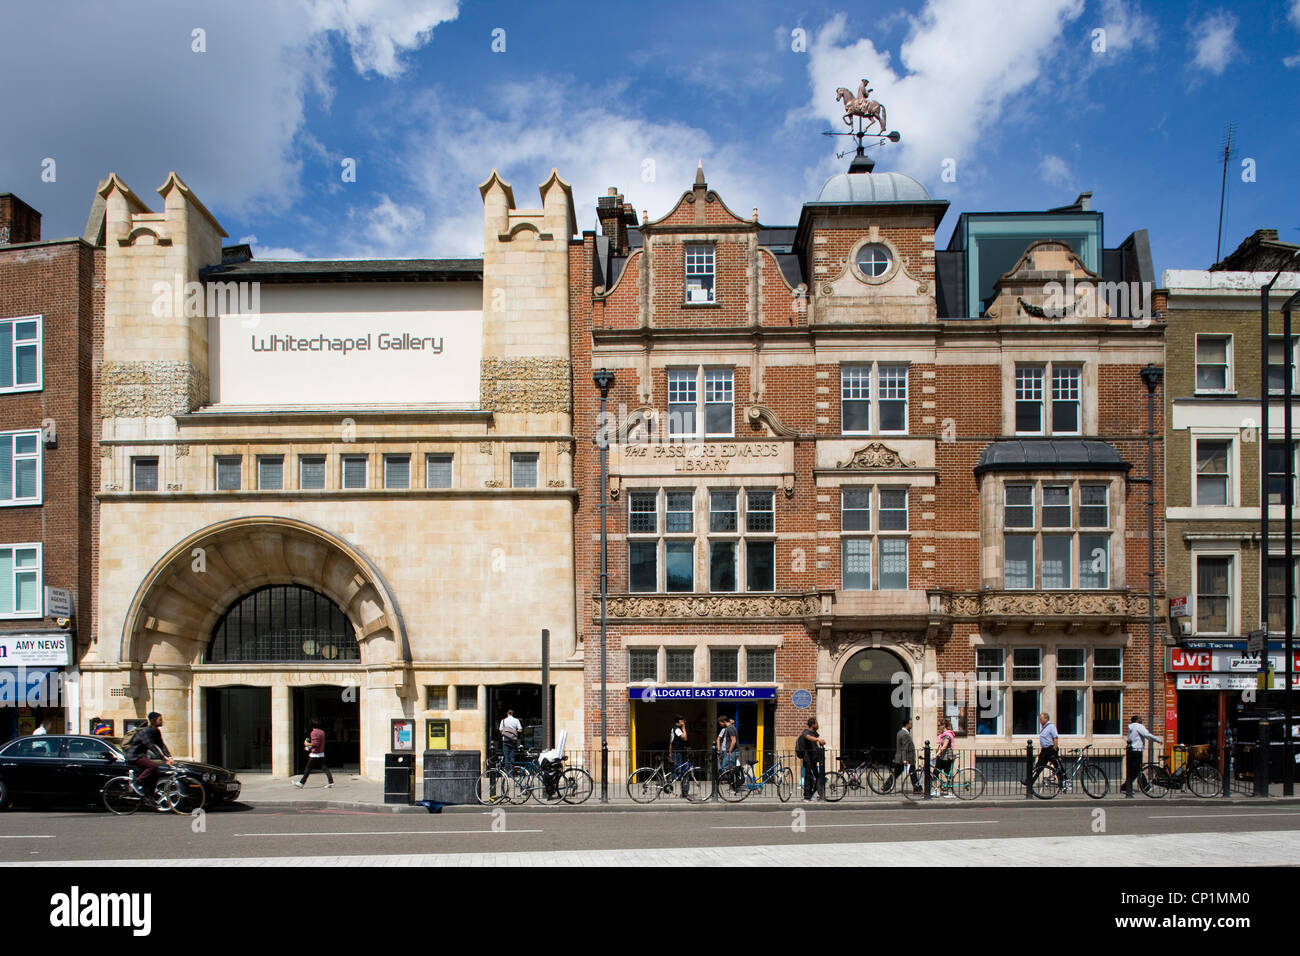 La Whitechapel Art Gallery, Londres, Inglaterra. Foto de stock